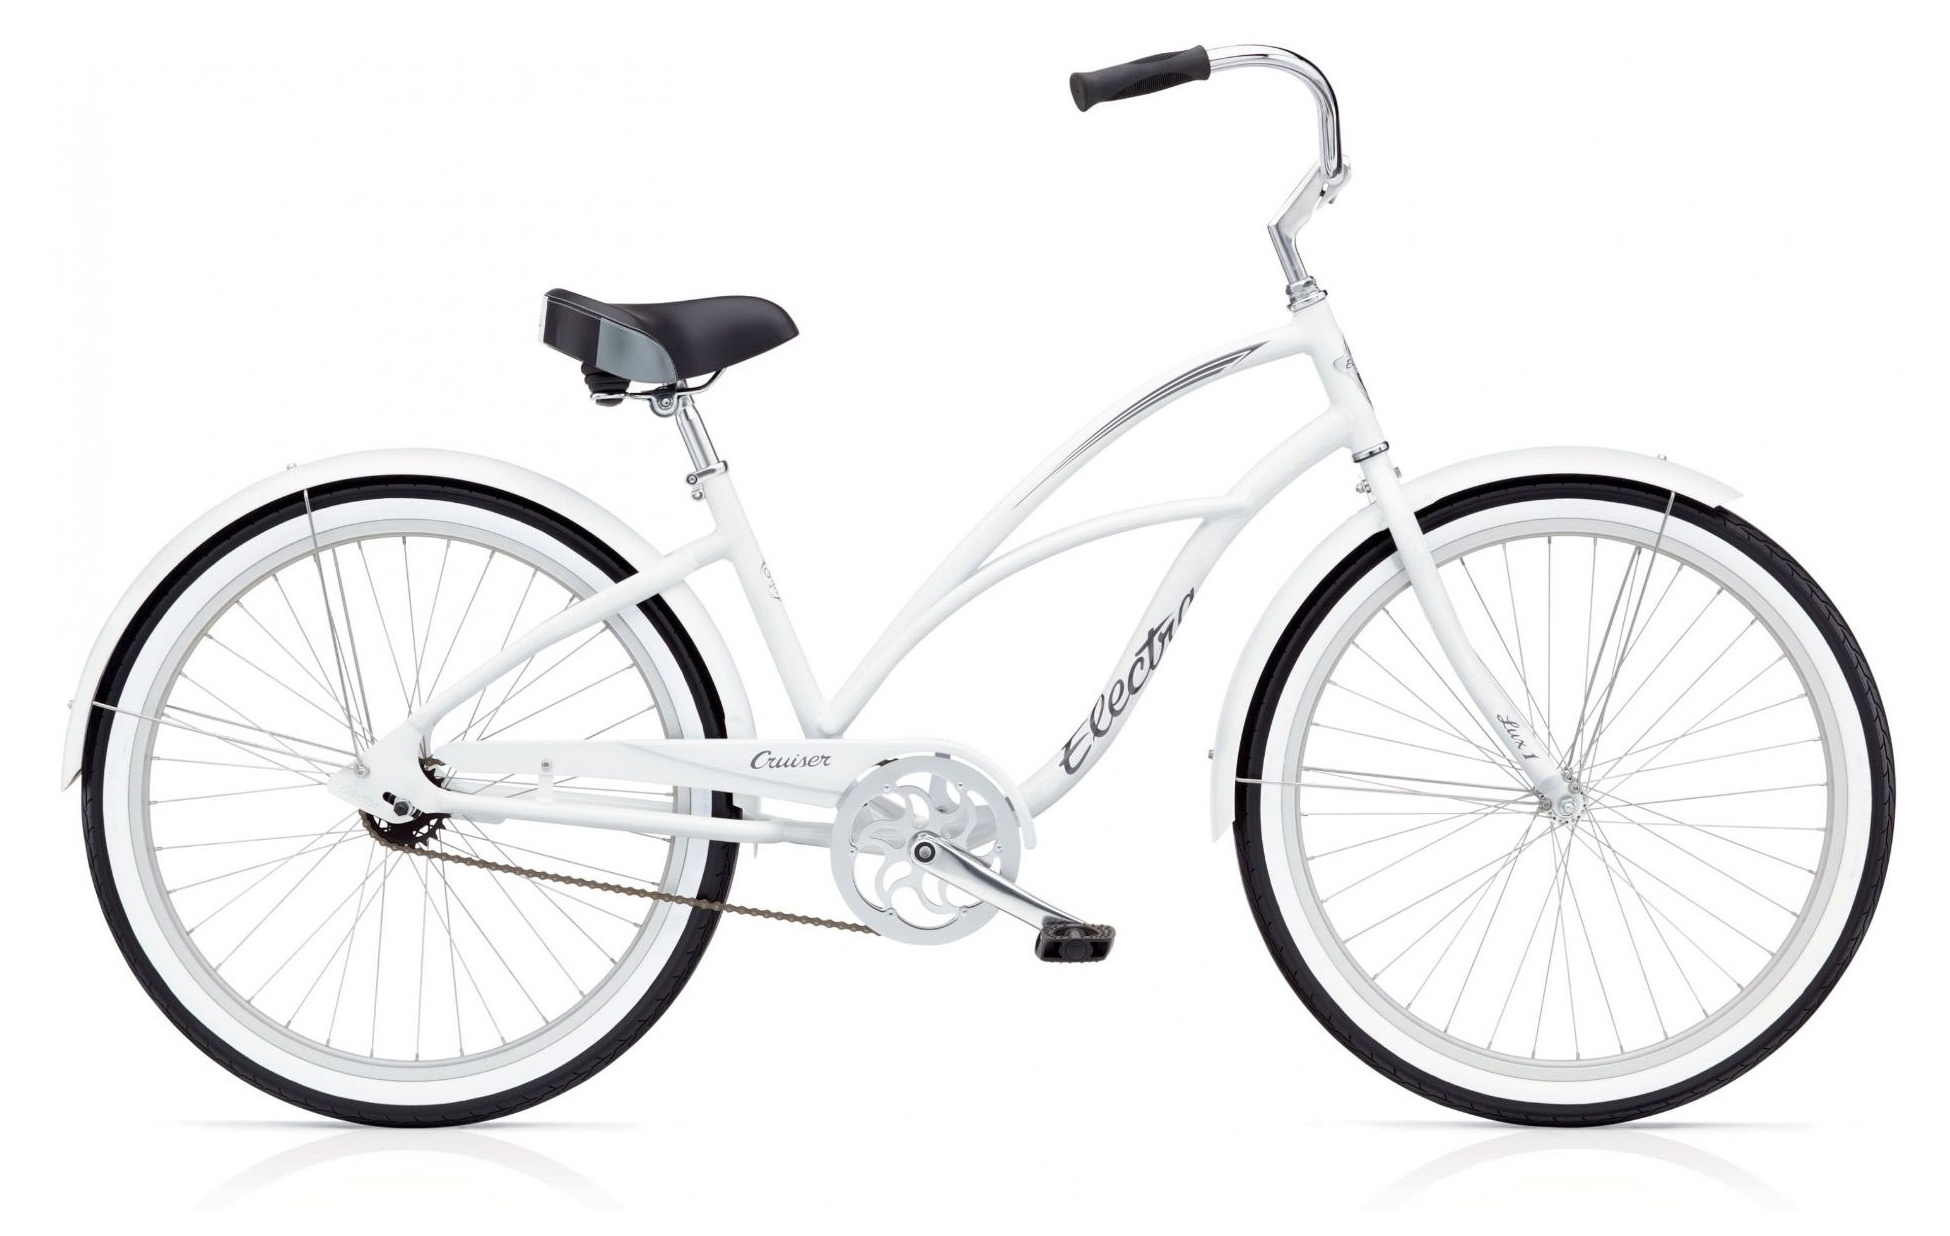  Велосипед Electra Cruiser Lux 1 2019